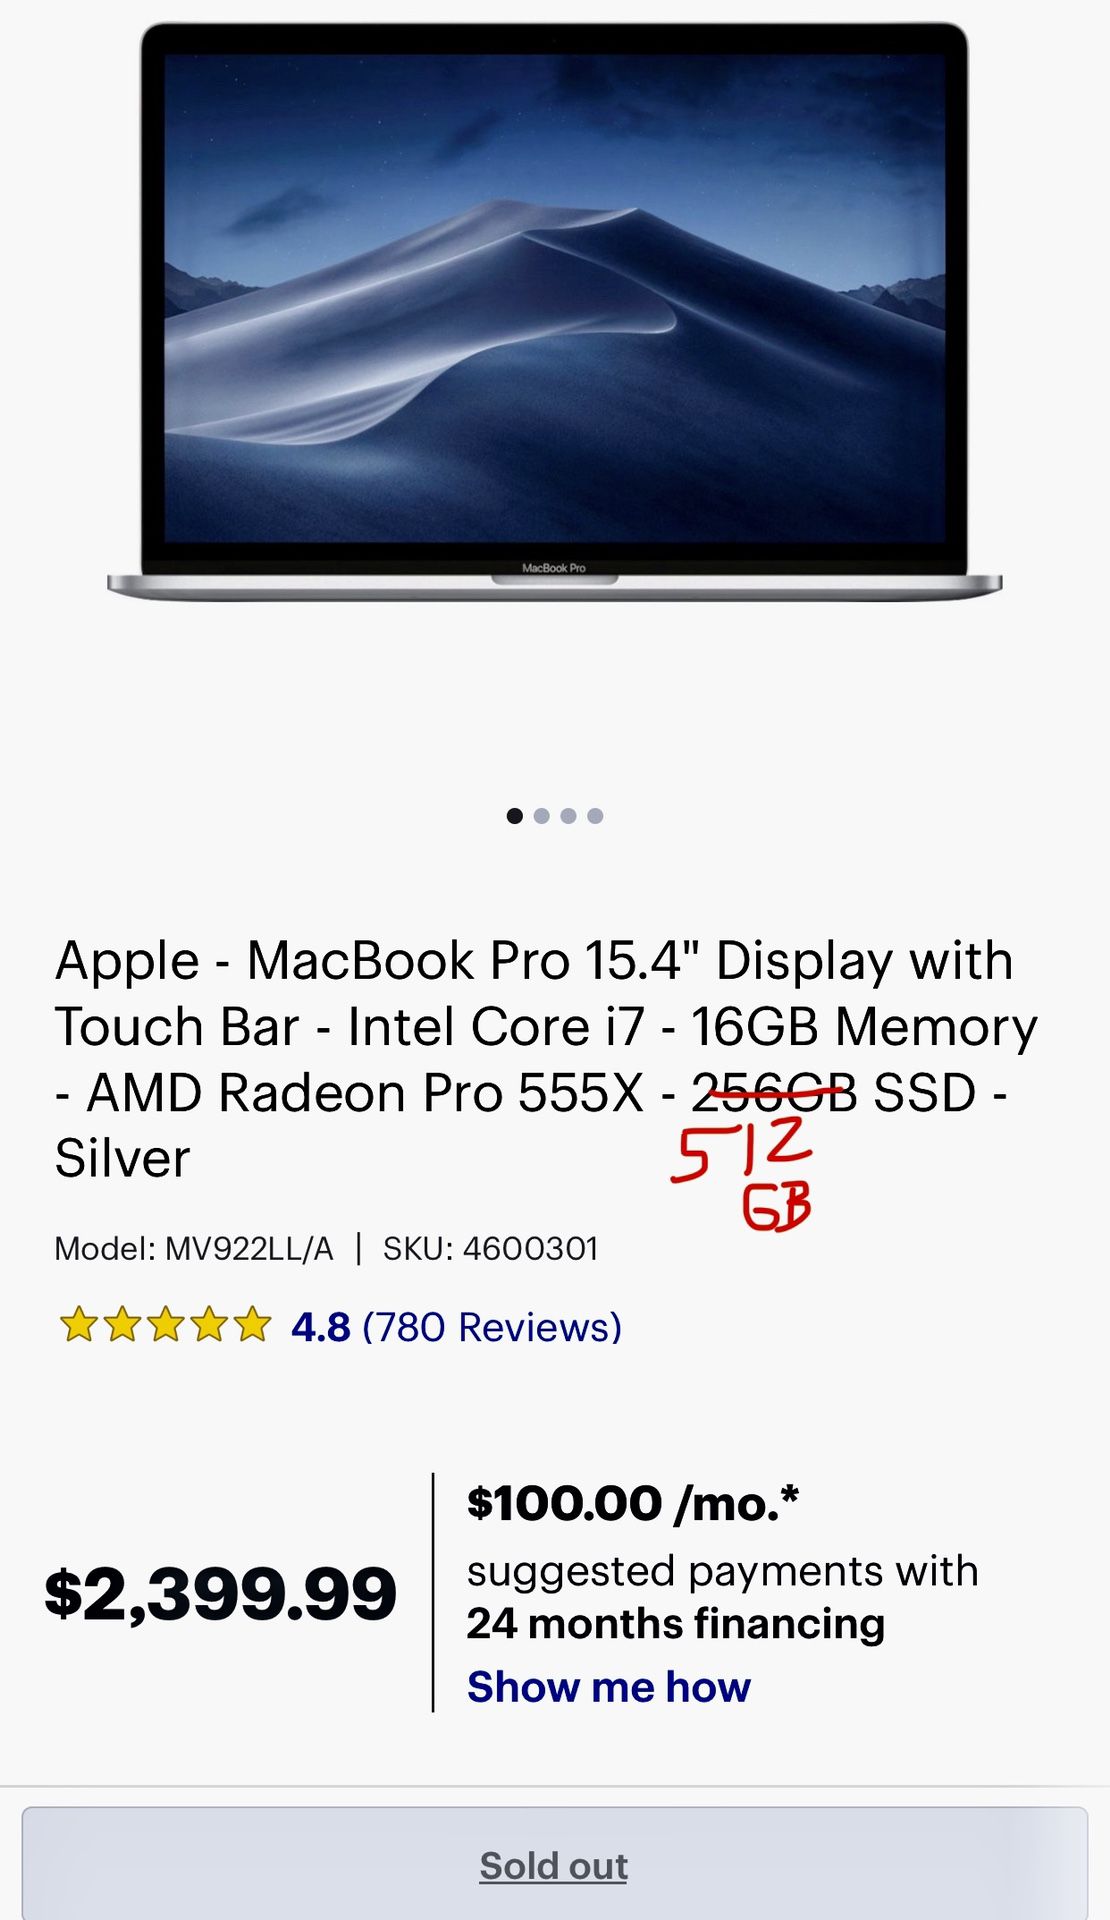 Brand New 2018 MacBook Pro w/ receipt